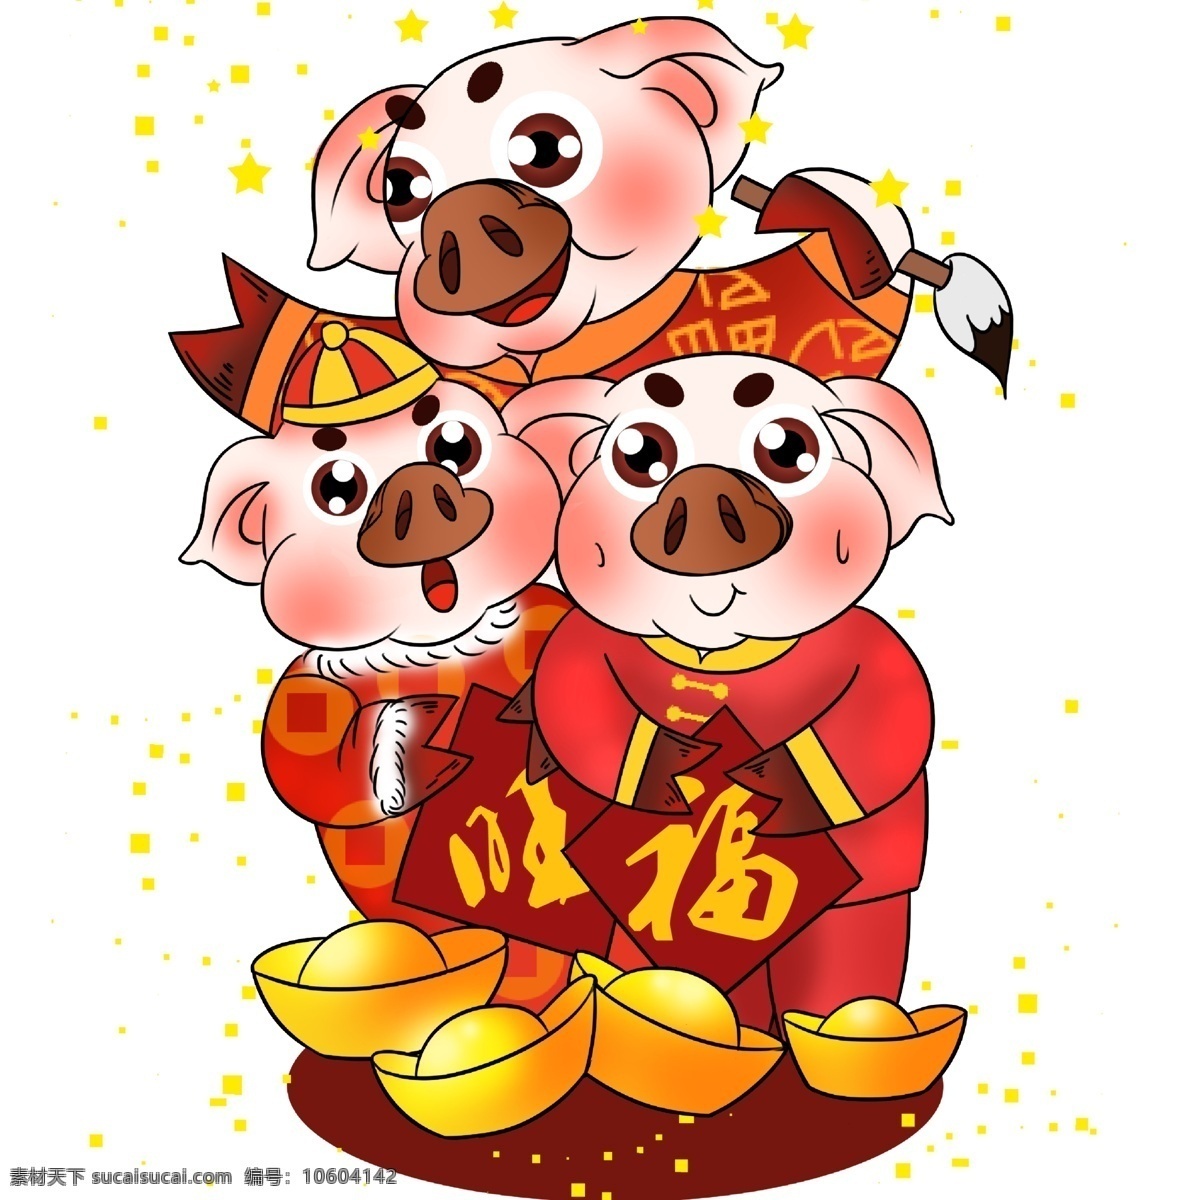 卡通 喜庆 贺岁 潮 猪 元素 中国风 春节 插画 手绘 潮猪 小猪设计 新春 新年 猪年 2019年 小猪形象 猪年形象